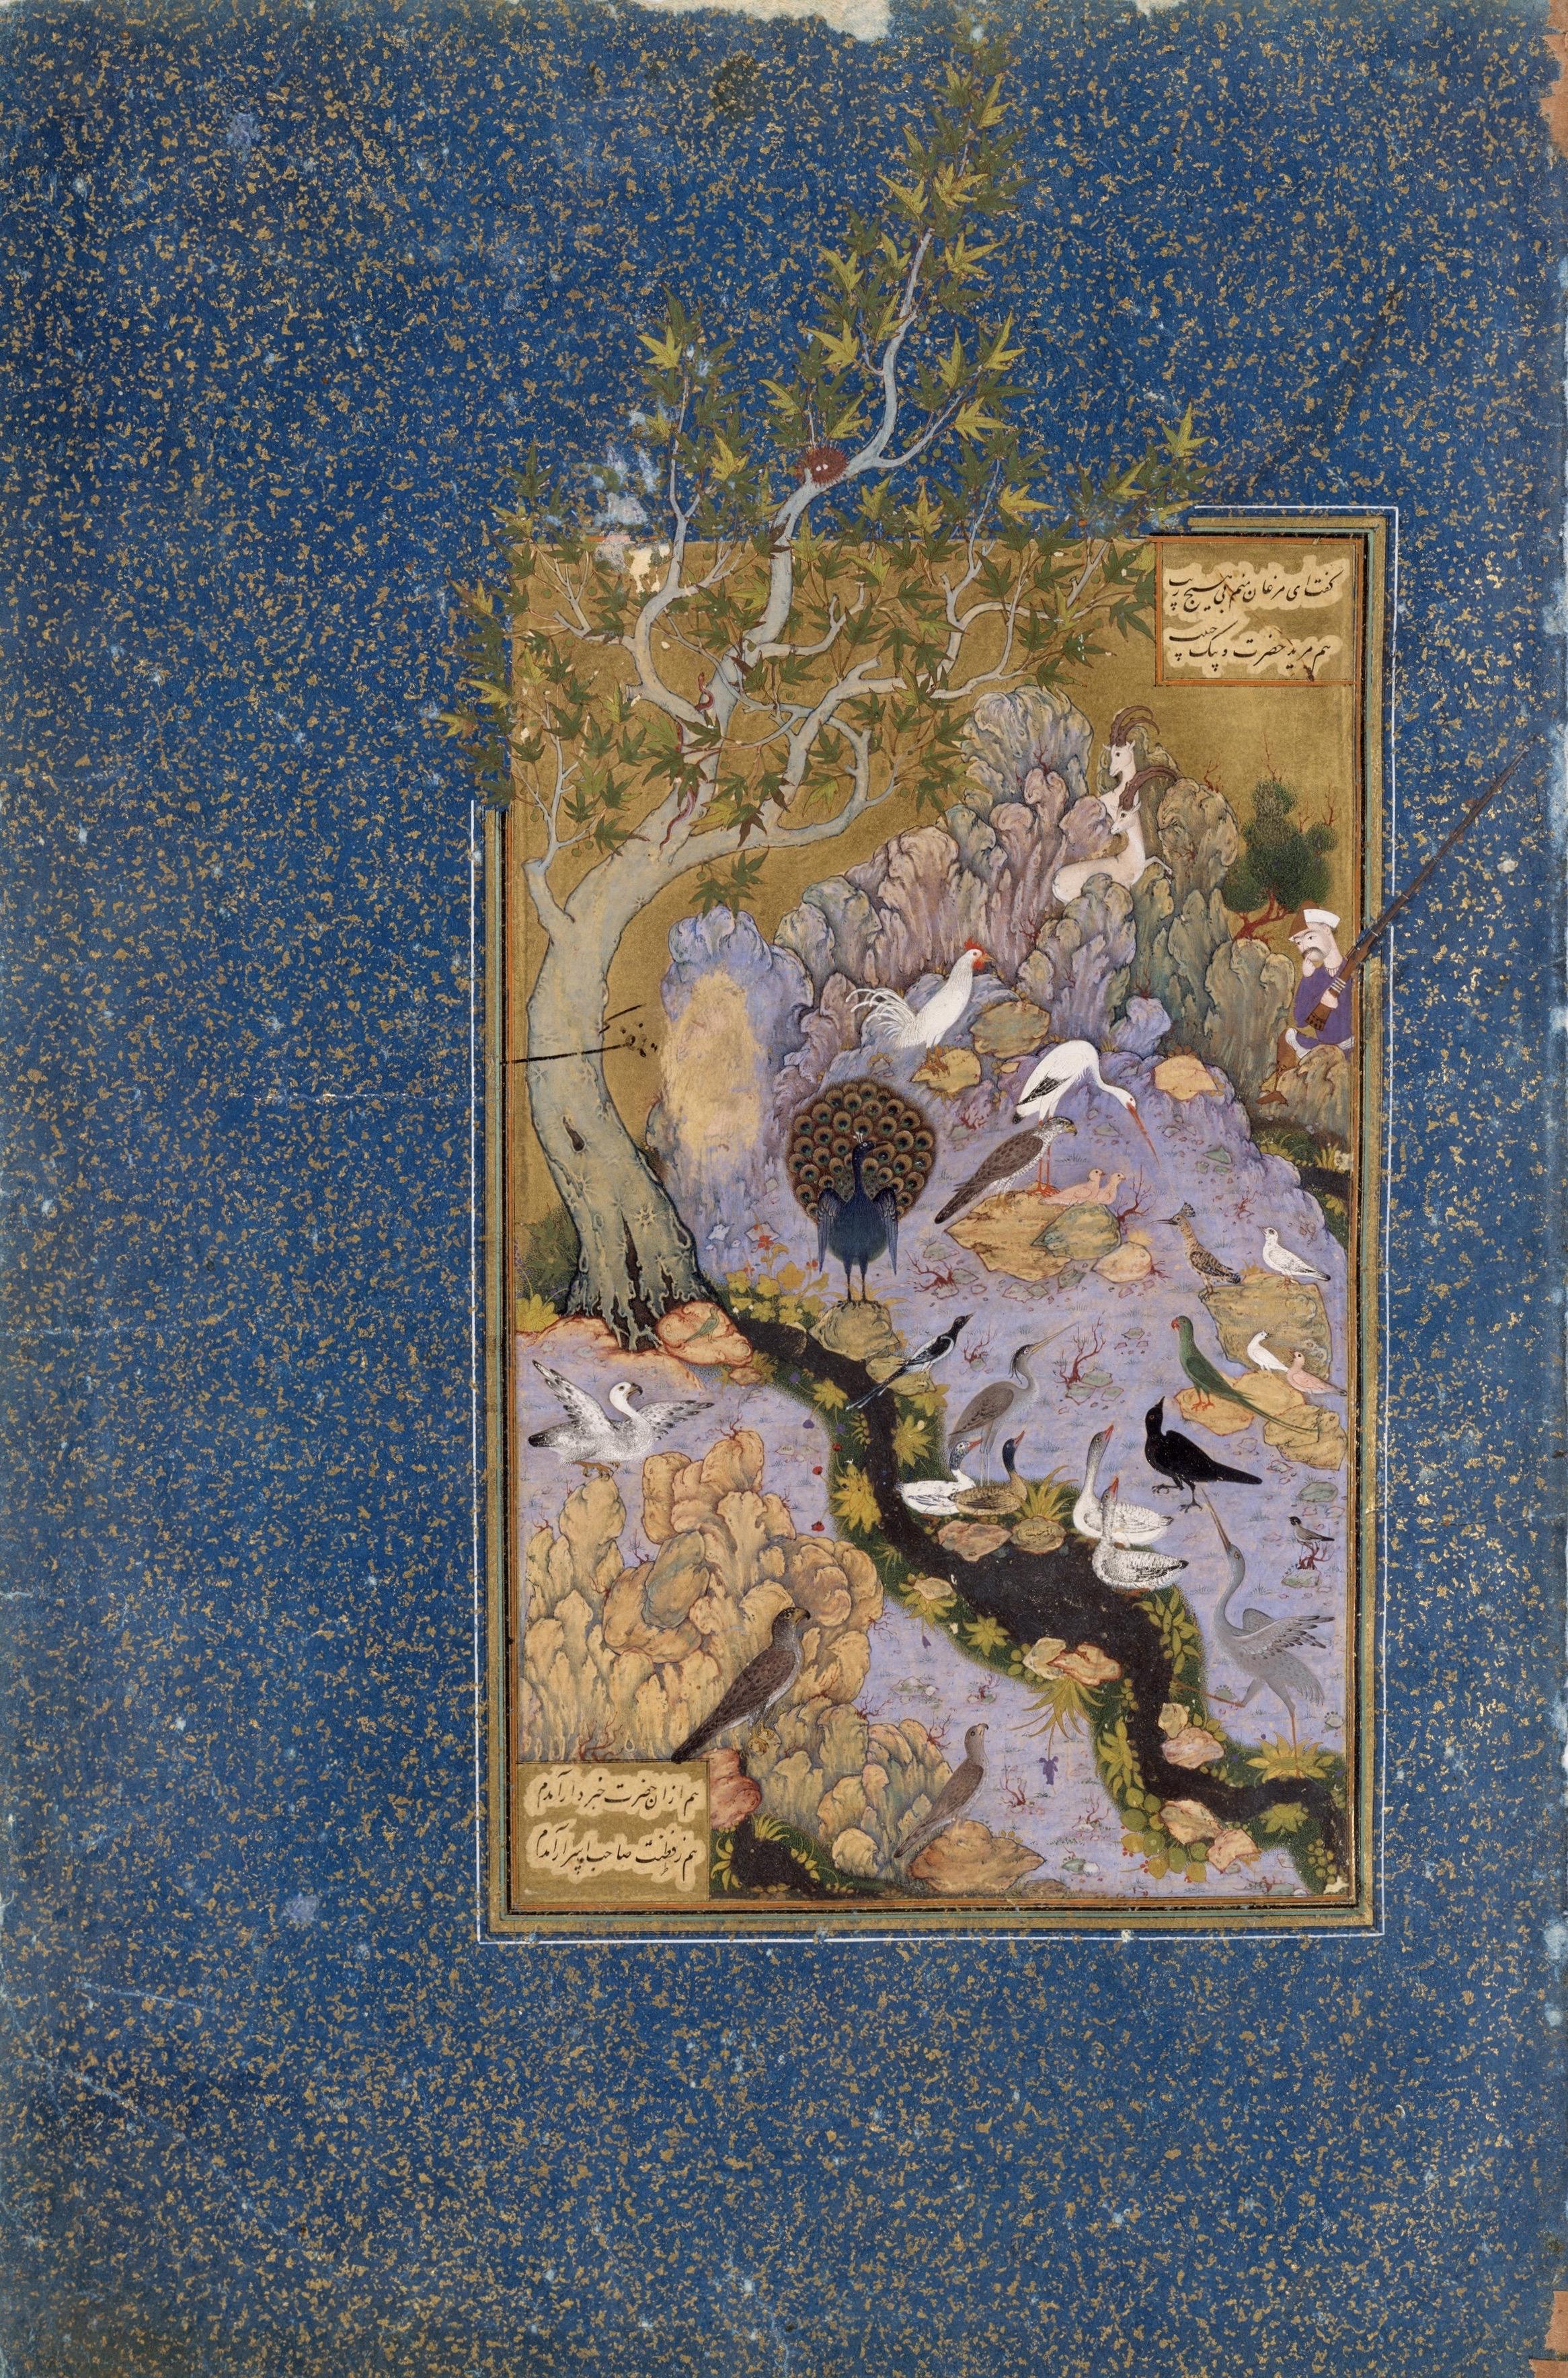 Χαμπίμ Αλάχ του Σαβά, Το συμβούλιο των πουλιών, στο: Φαρίντ αλ-Ντιν, Η γλώσσα των πουλιών, Metropolitan Museum of Art, Νέα Υόρκη.